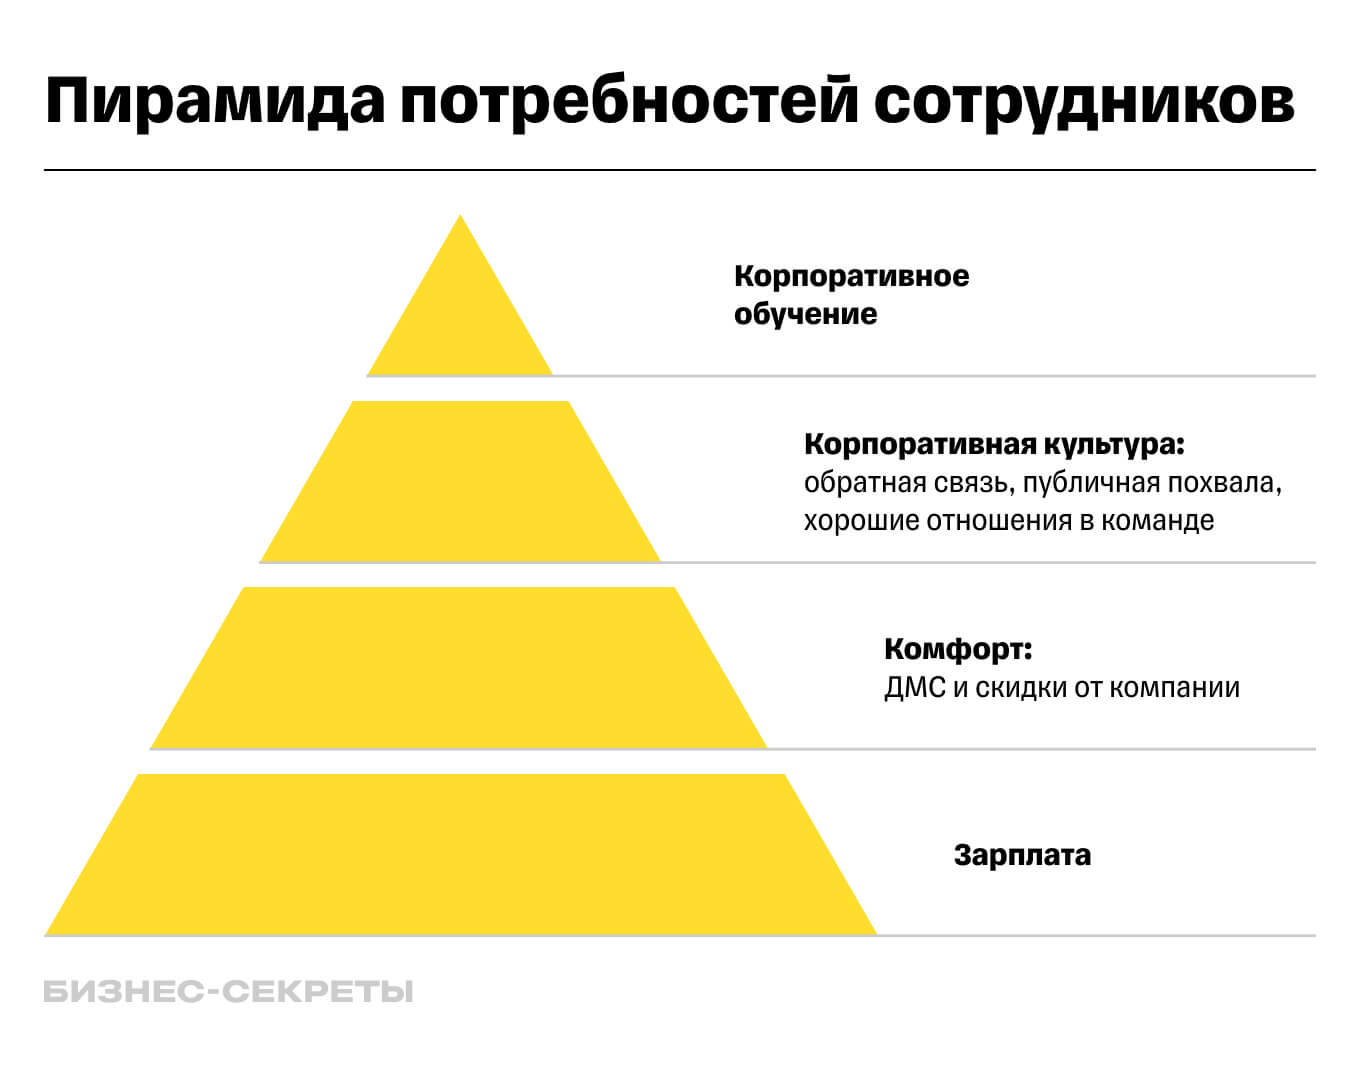 пирамида потребностей сотрудников